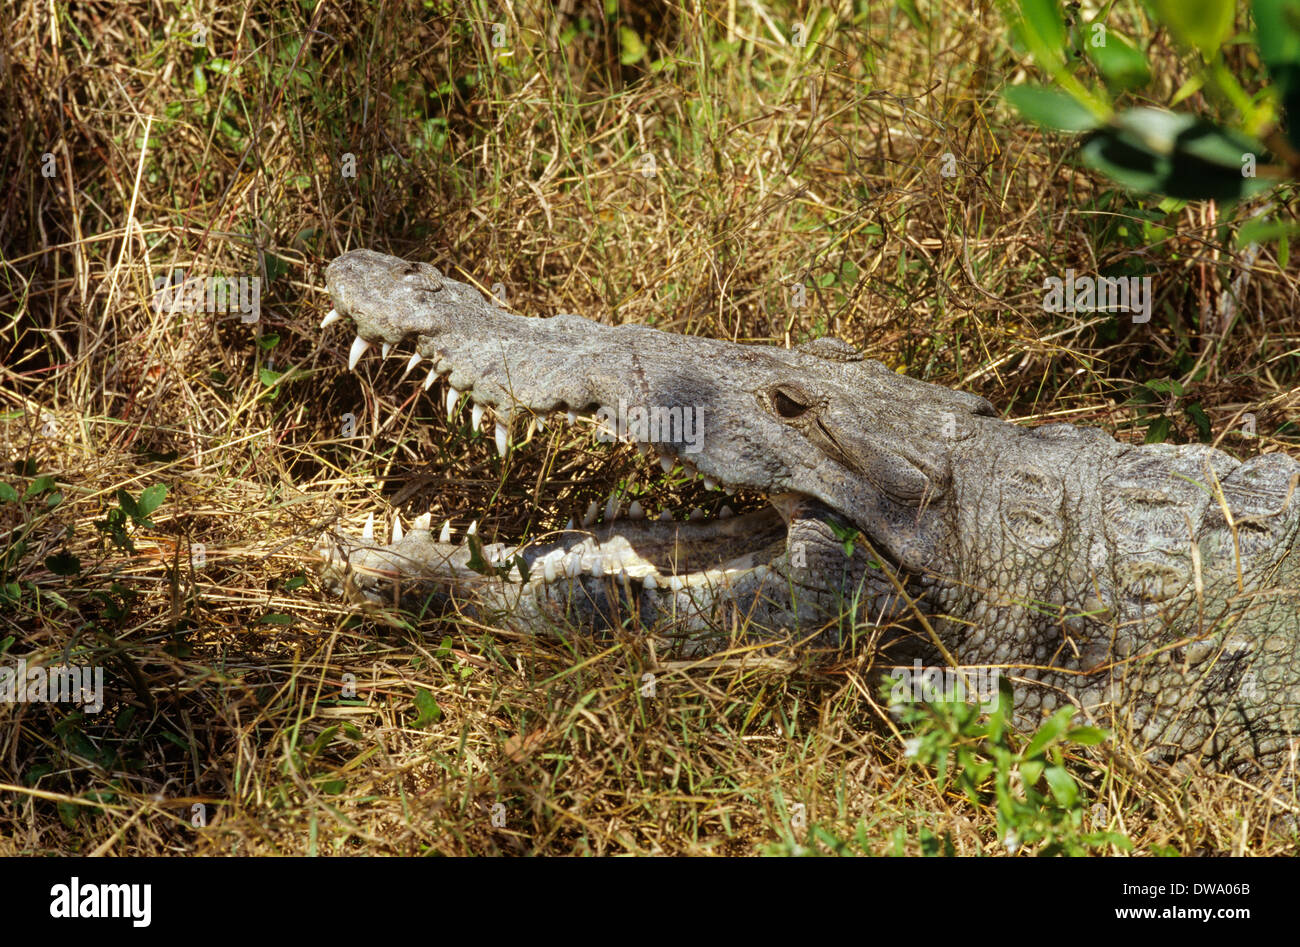 Sebbene meno comuni del 'Gator,' coccodrilli può anche essere visto nel Parco nazionale delle Everglades, Florida, Stati Uniti d'America Foto Stock